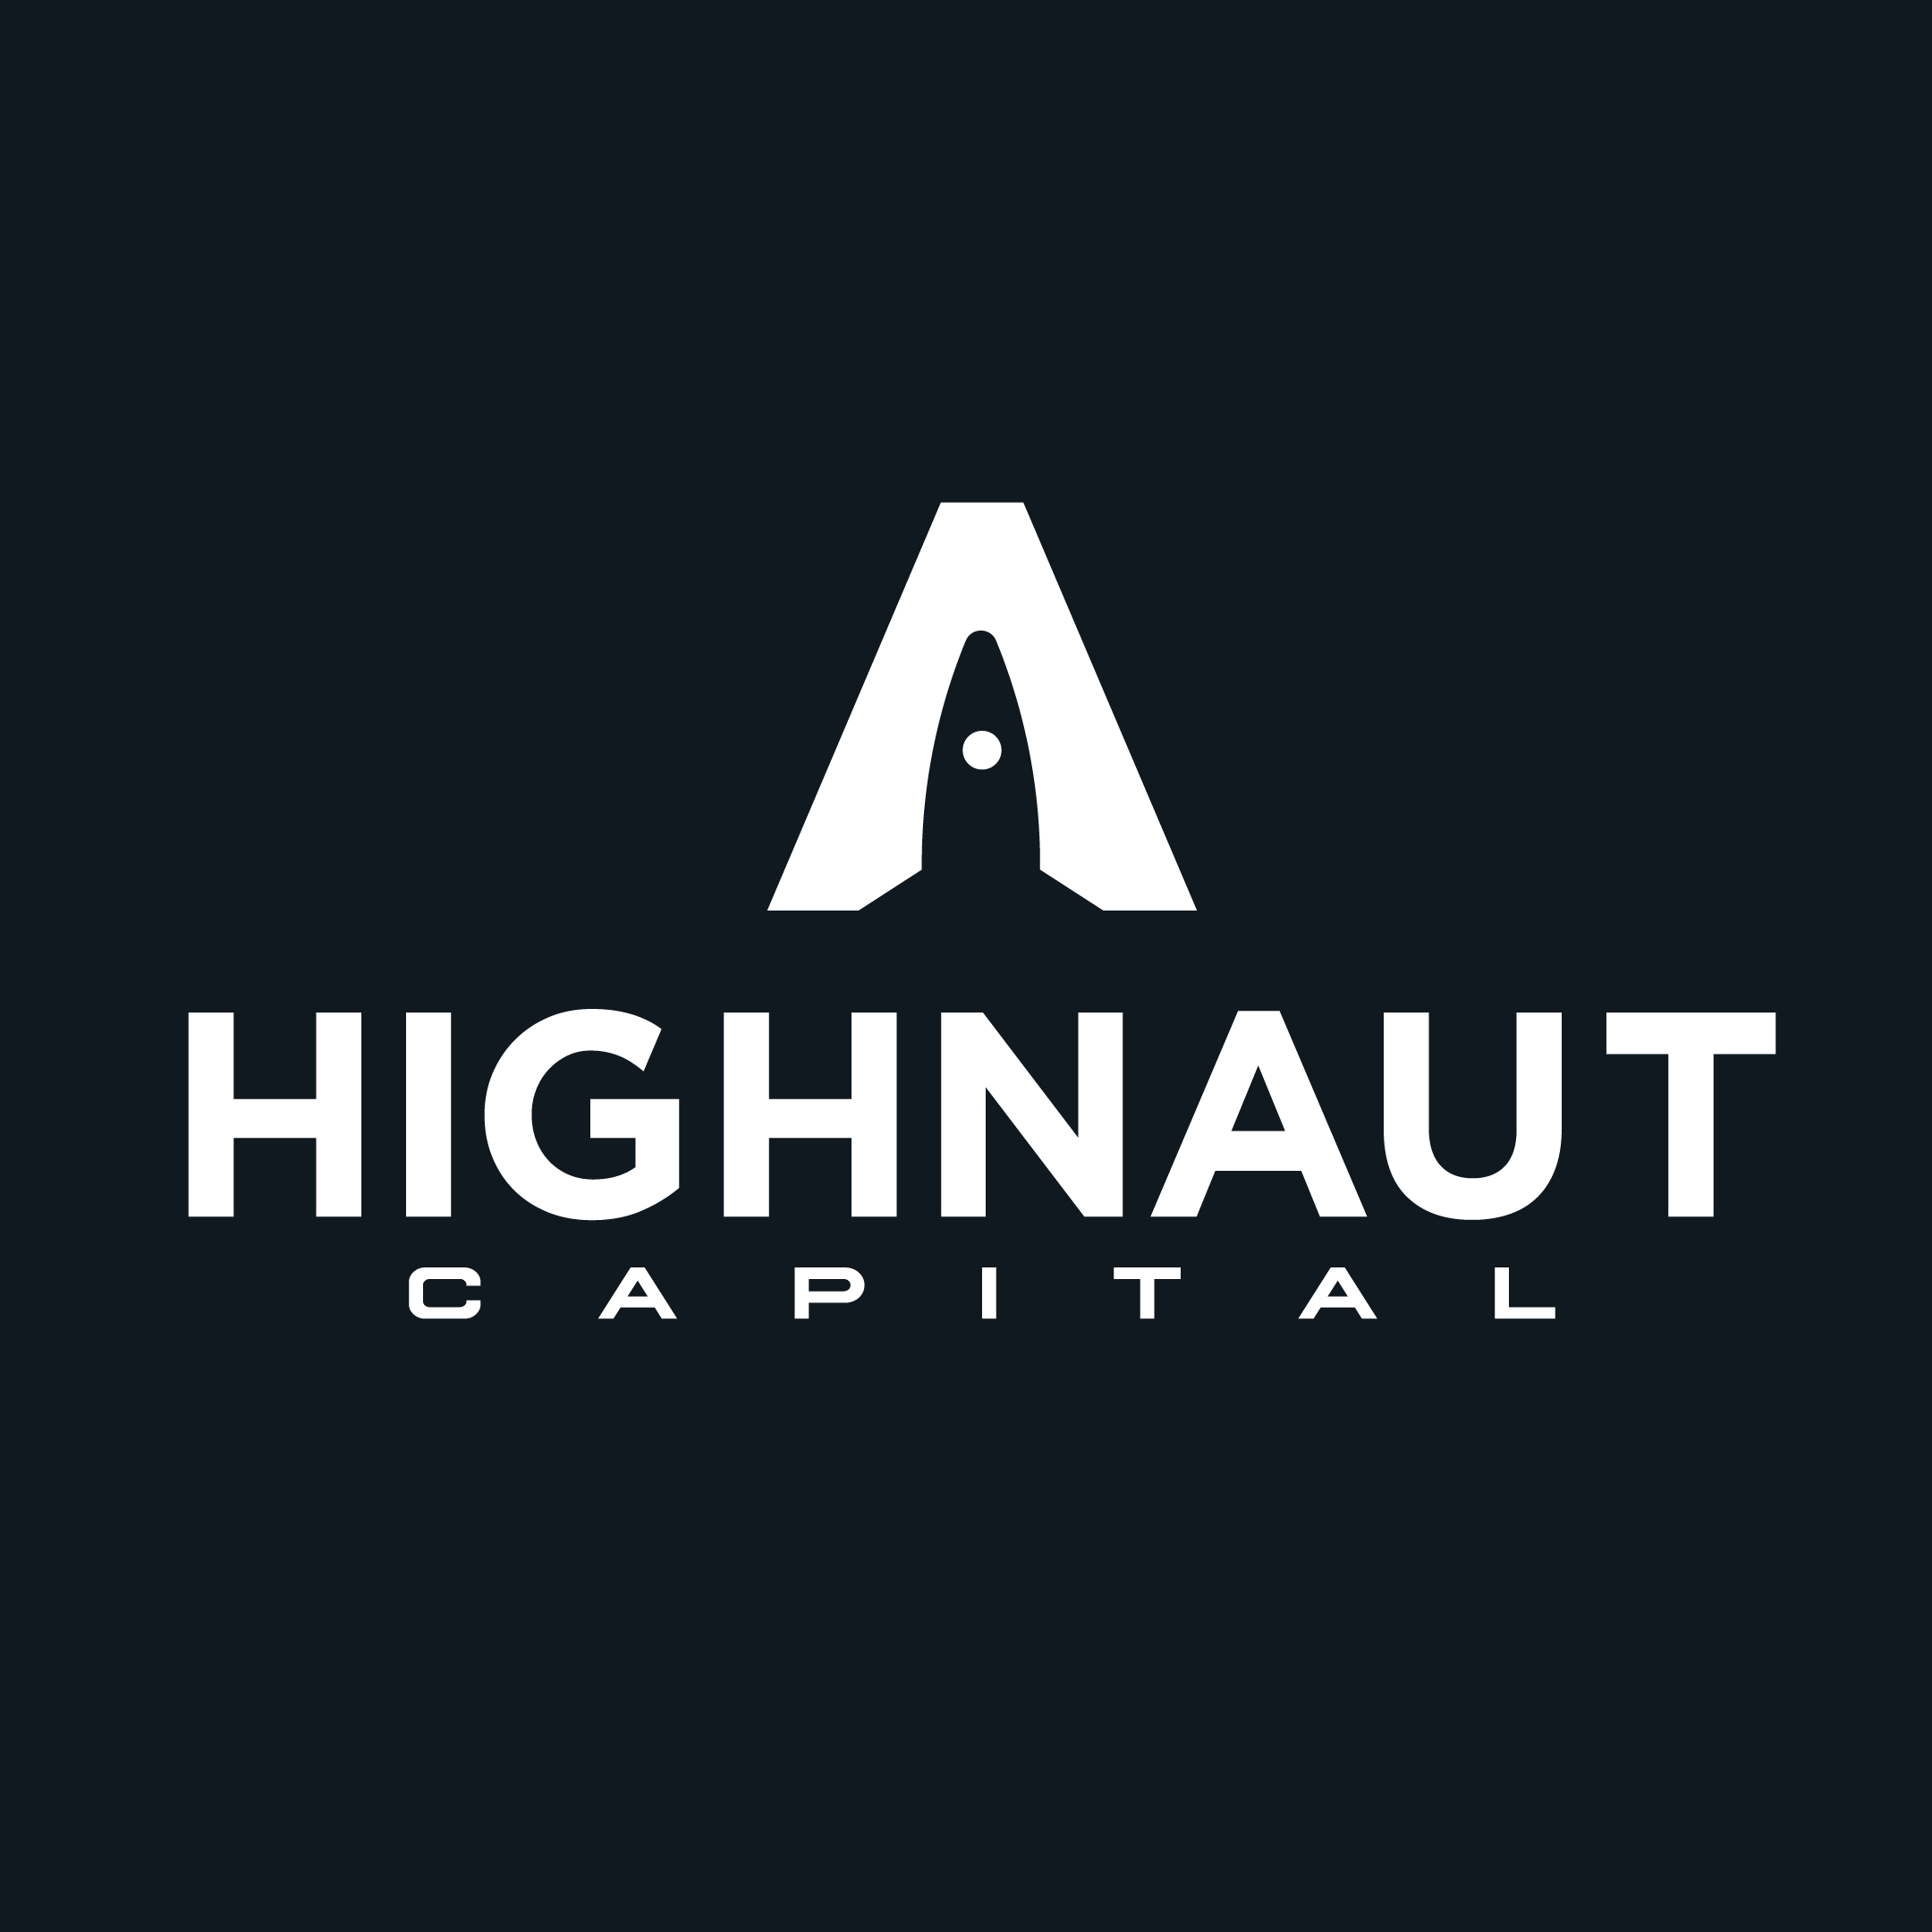 High Naut Capital